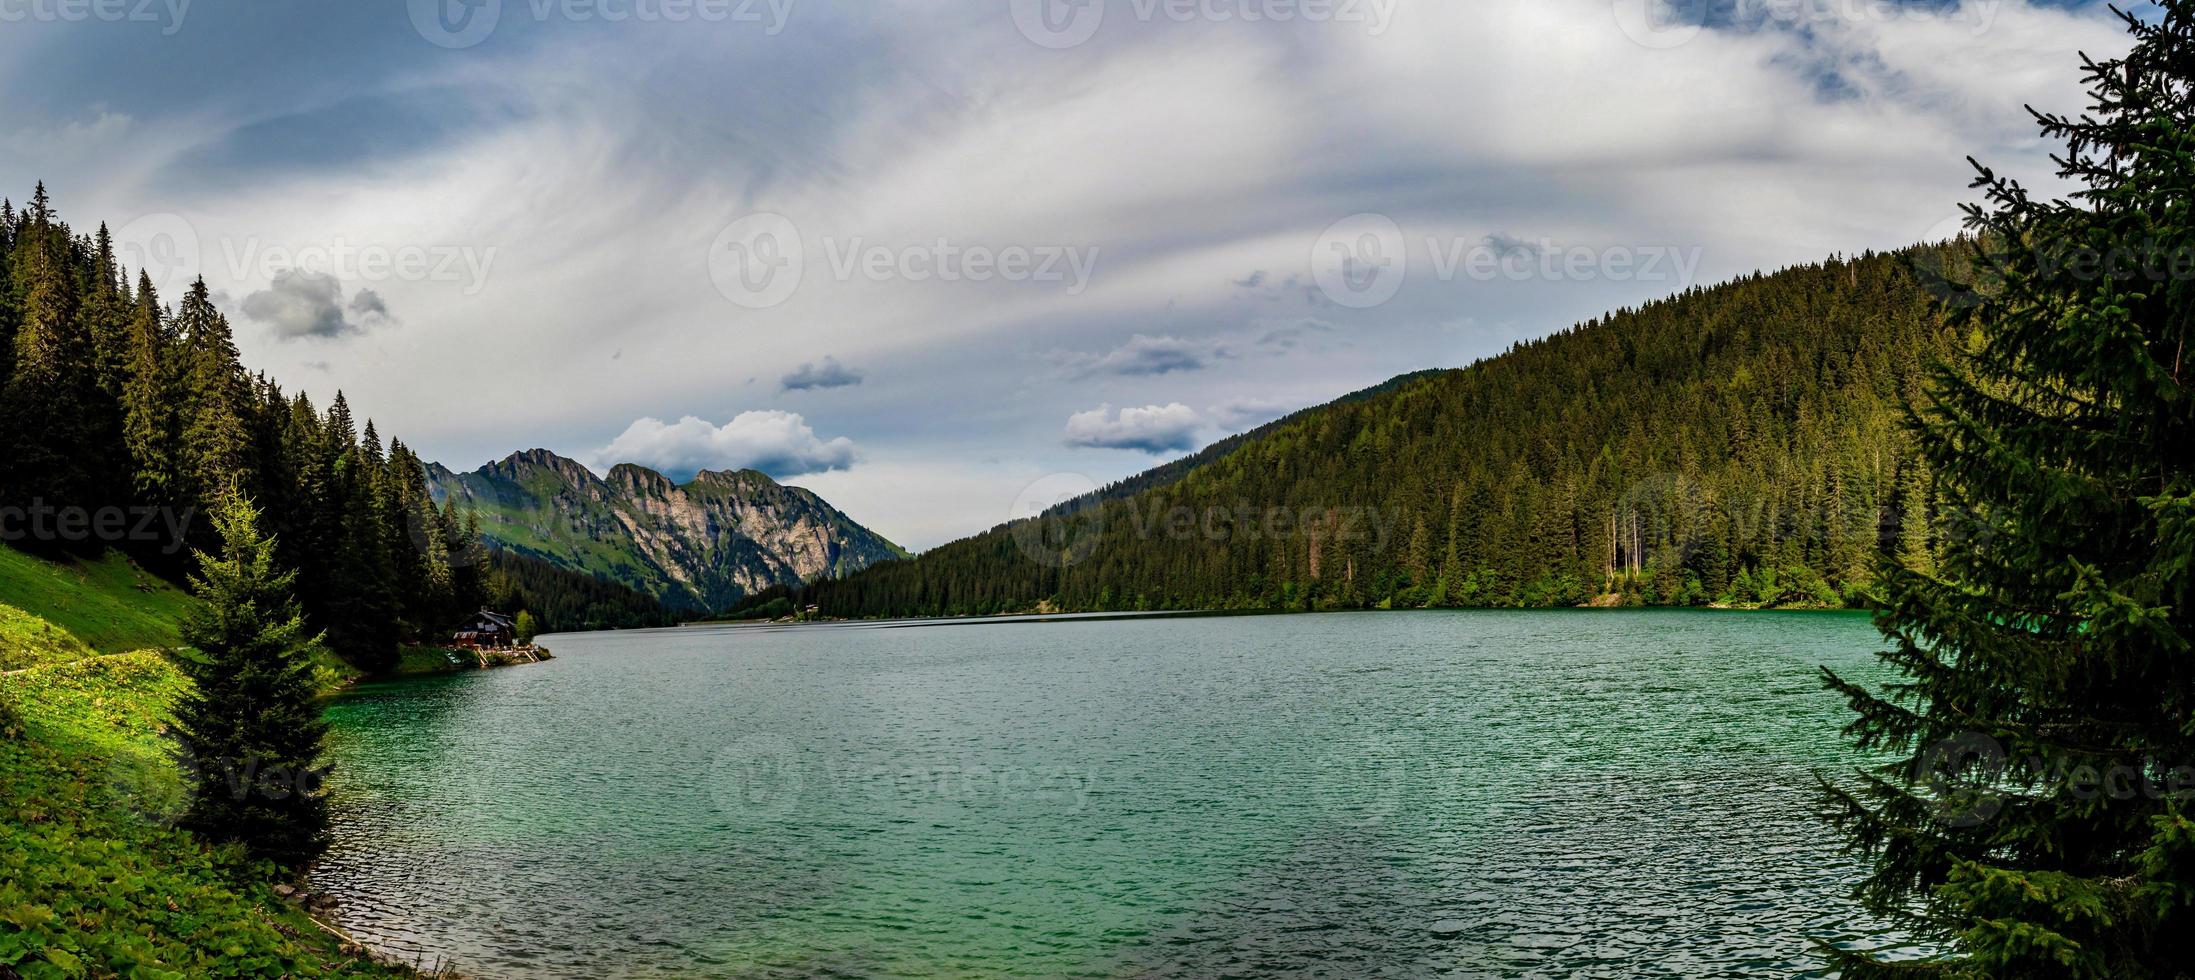 vilse i bergen i Schweiz, sjön Arnesee med kristallklart vatten i turkosa och azurblå färger. foto